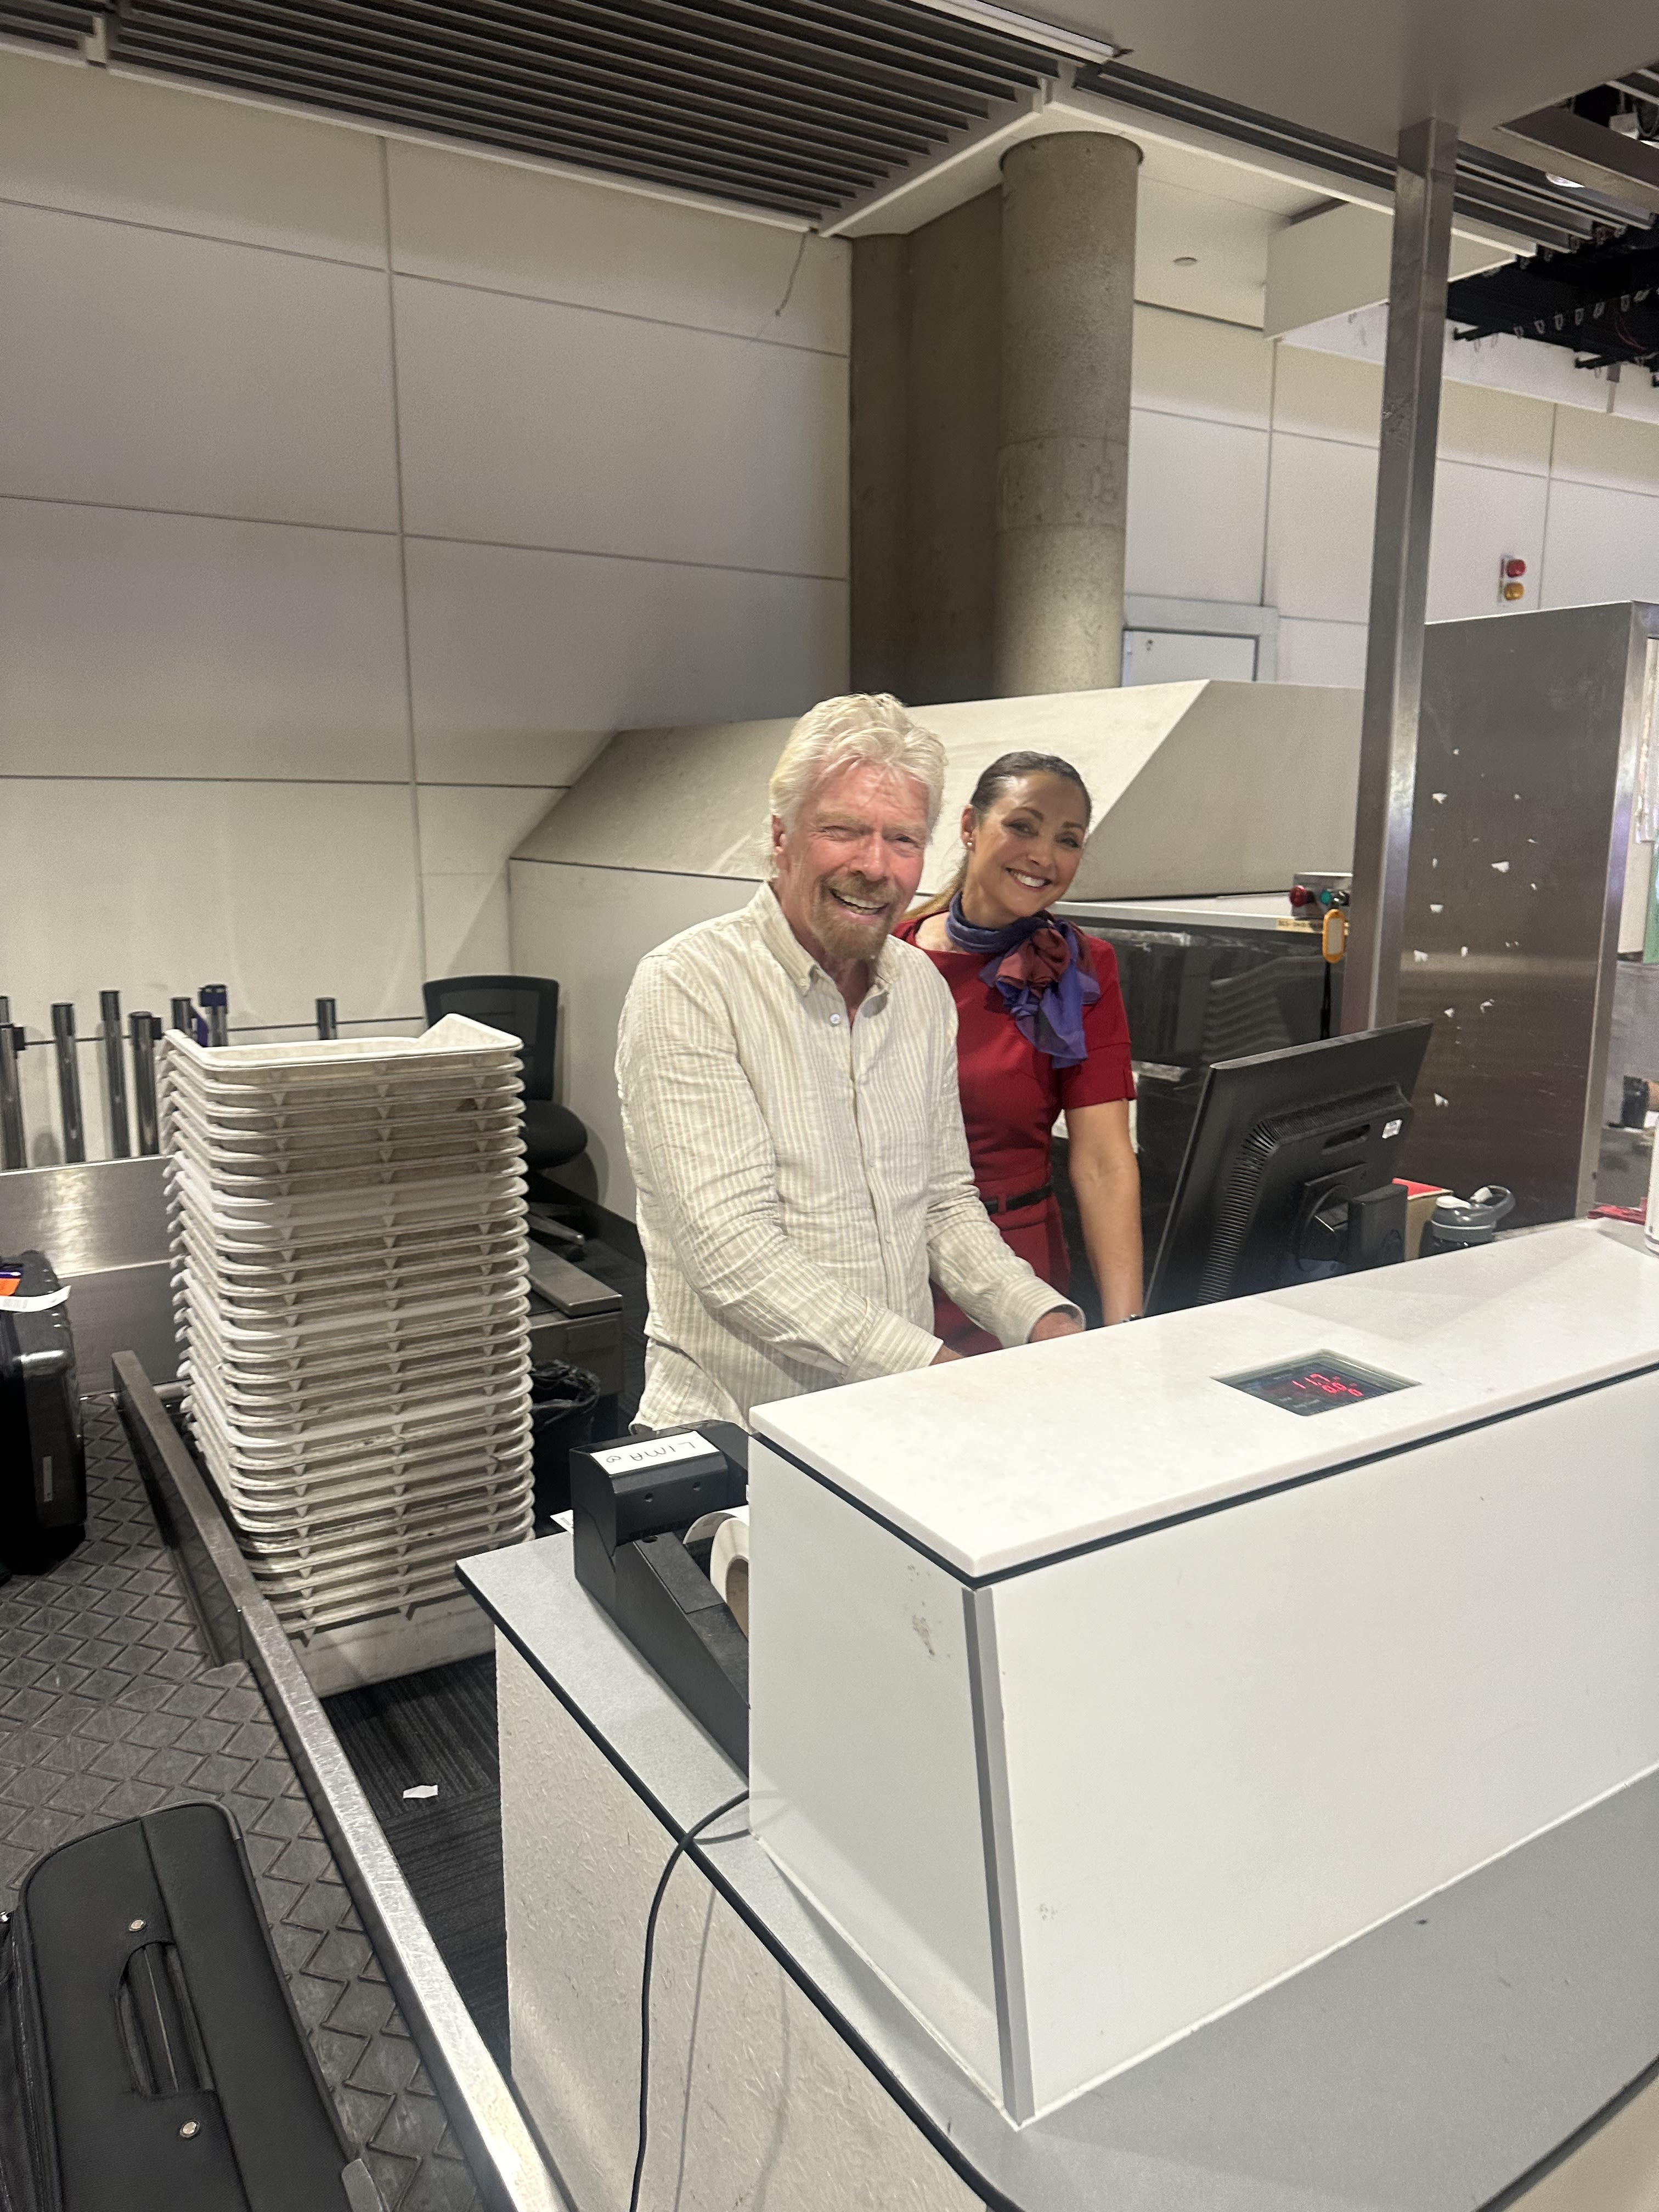 Richard Branson pretending to work at the Virgin Australia check-in desk